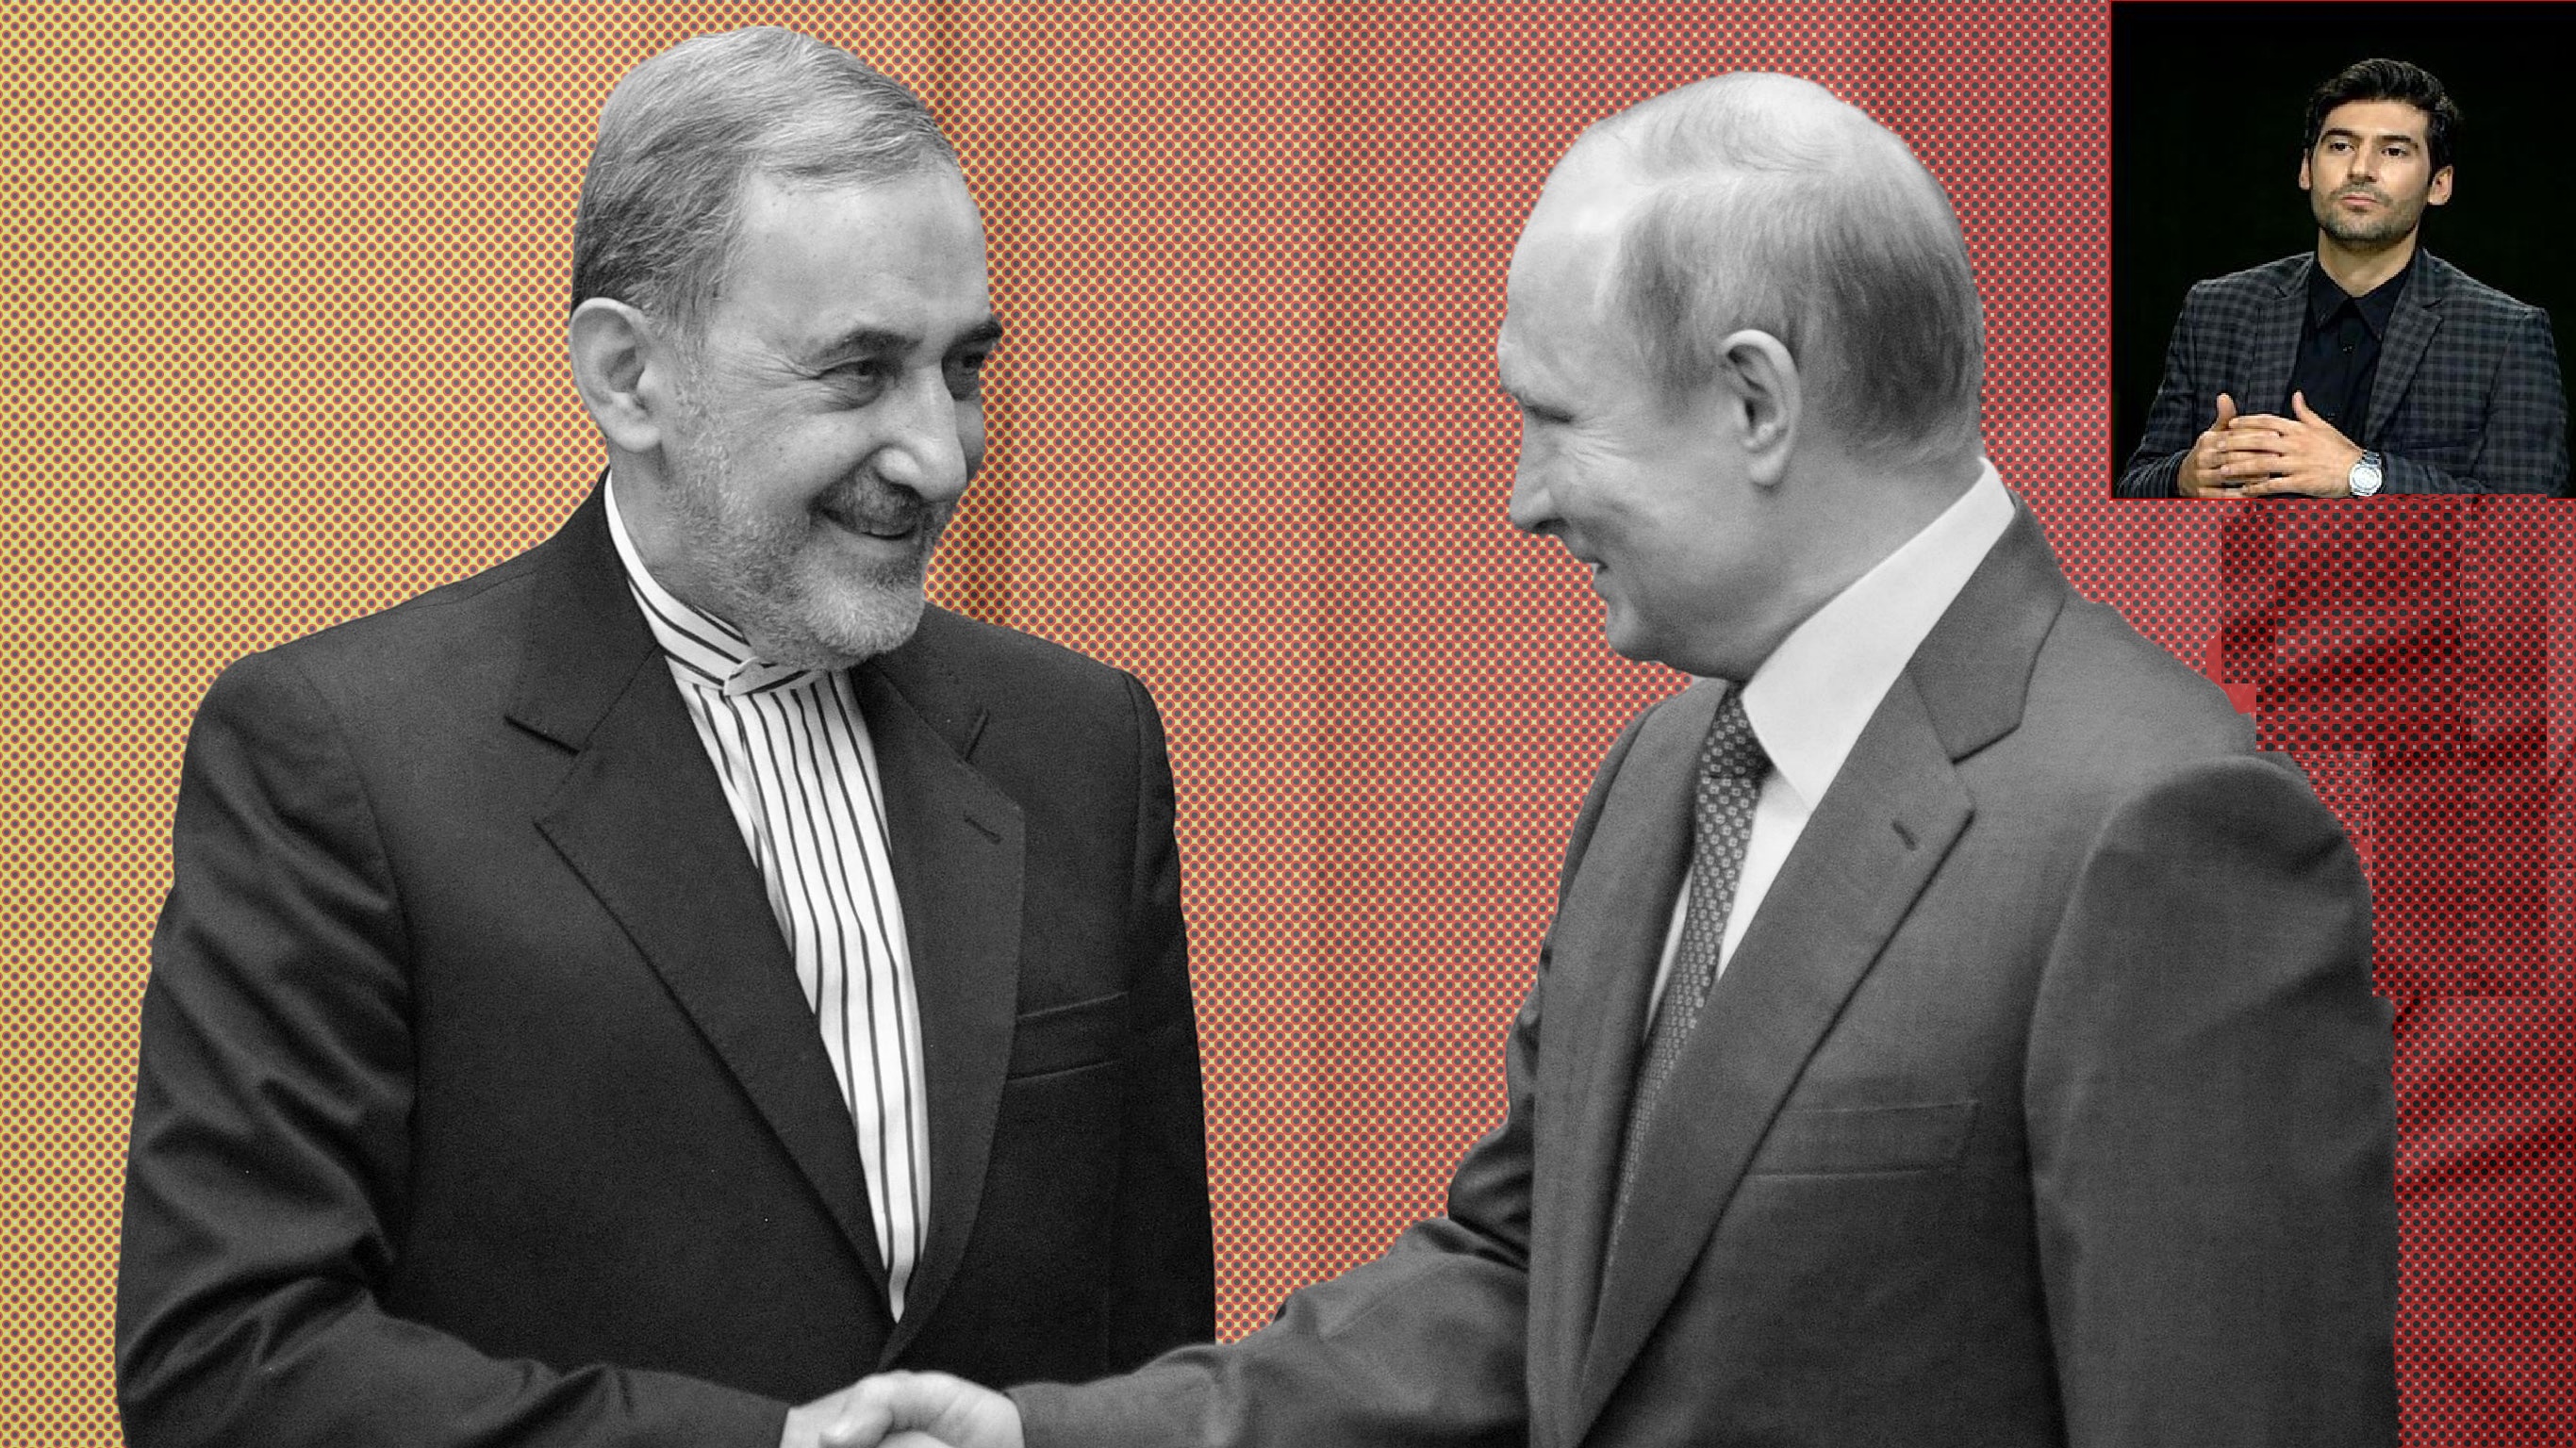 چرا توافقات راهبردی تهران-مسکو روی کاغذ می ماند؟